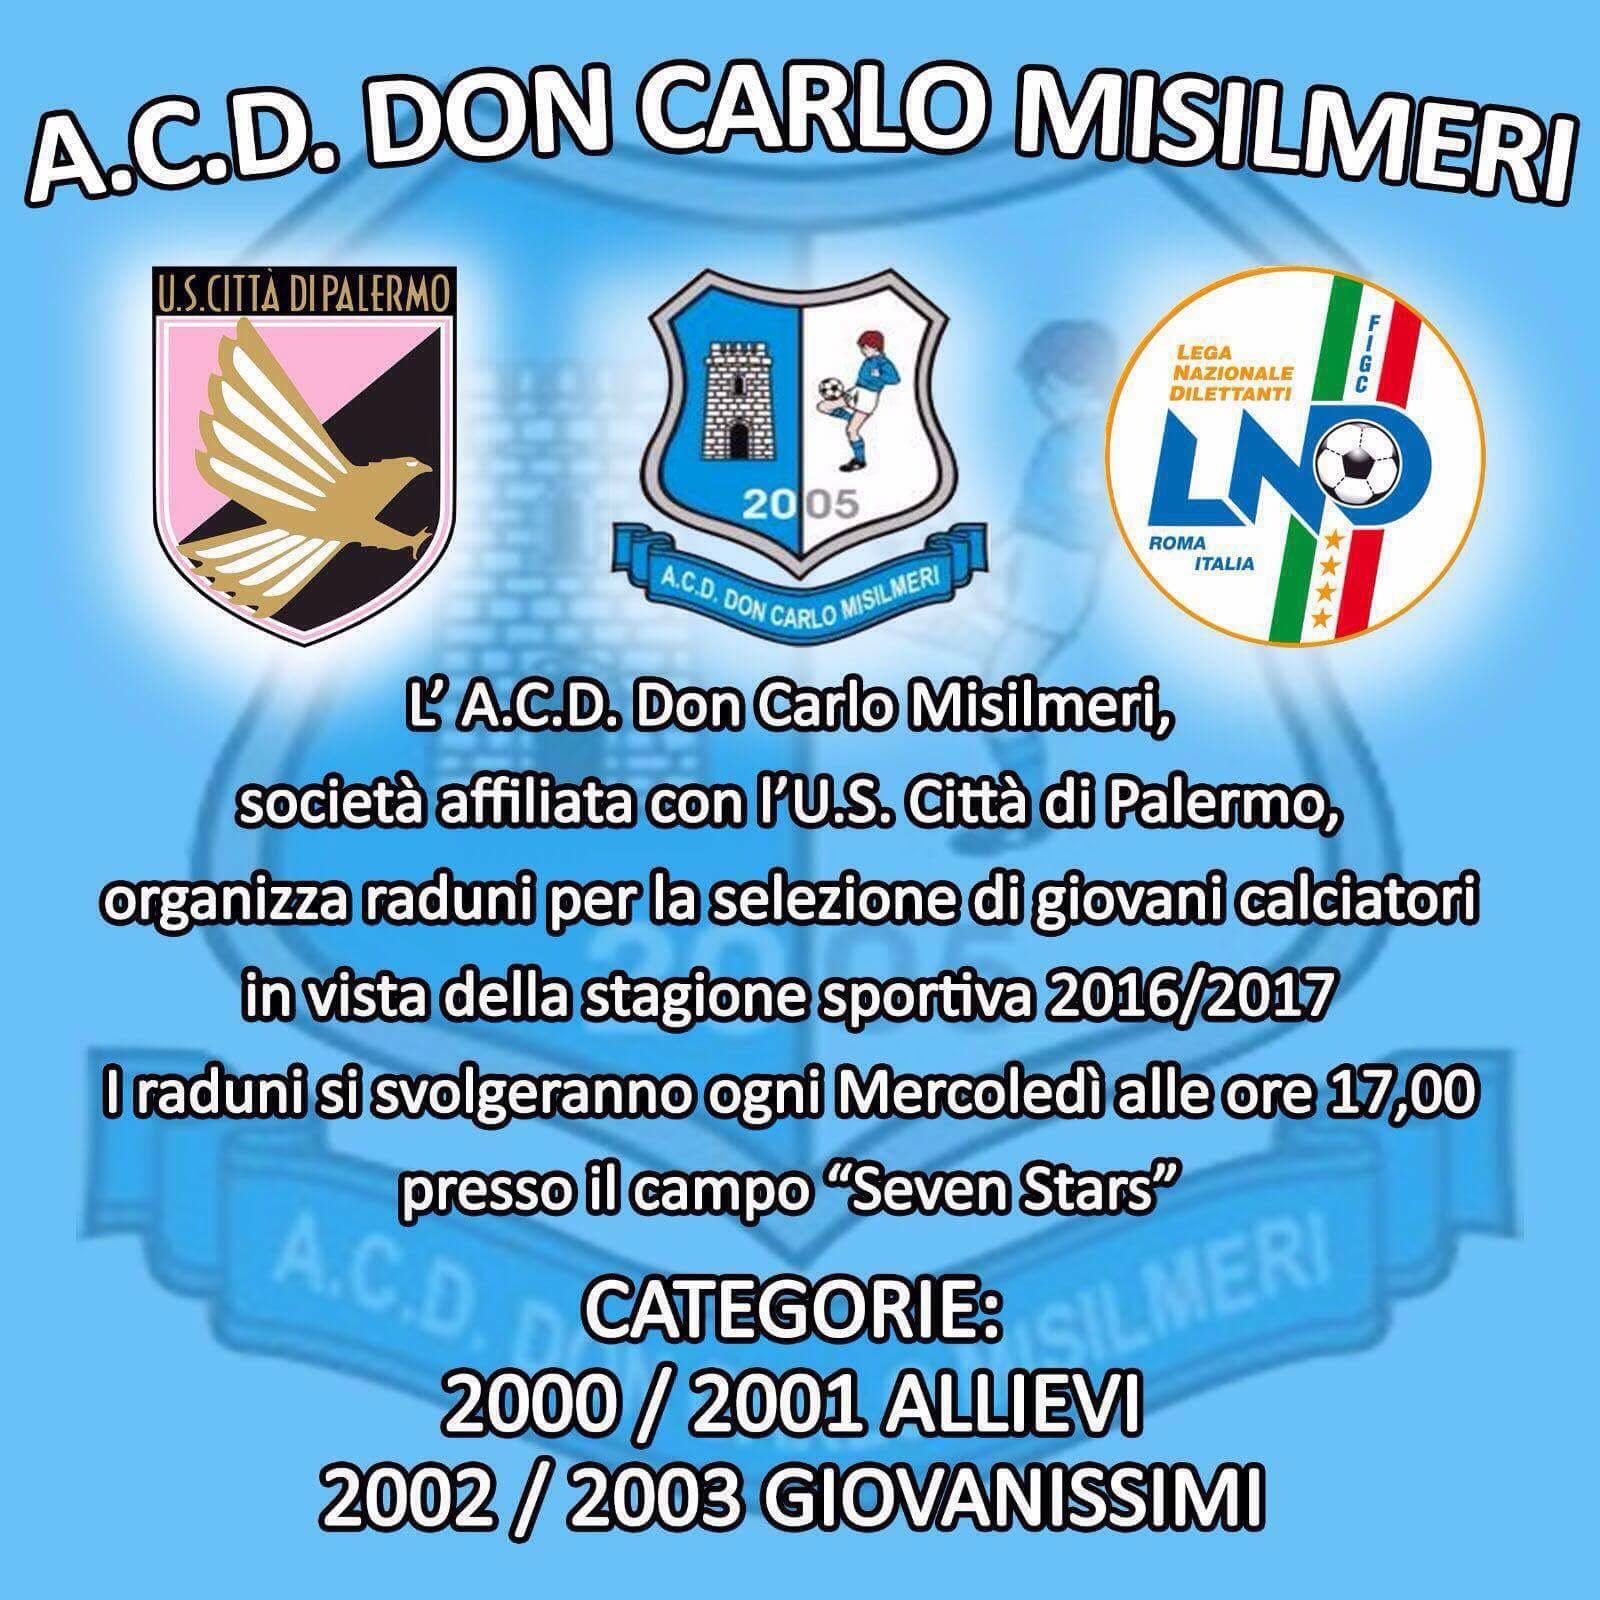 Don Carlo Misilmeri, al via le selezioni per giovani calciatori